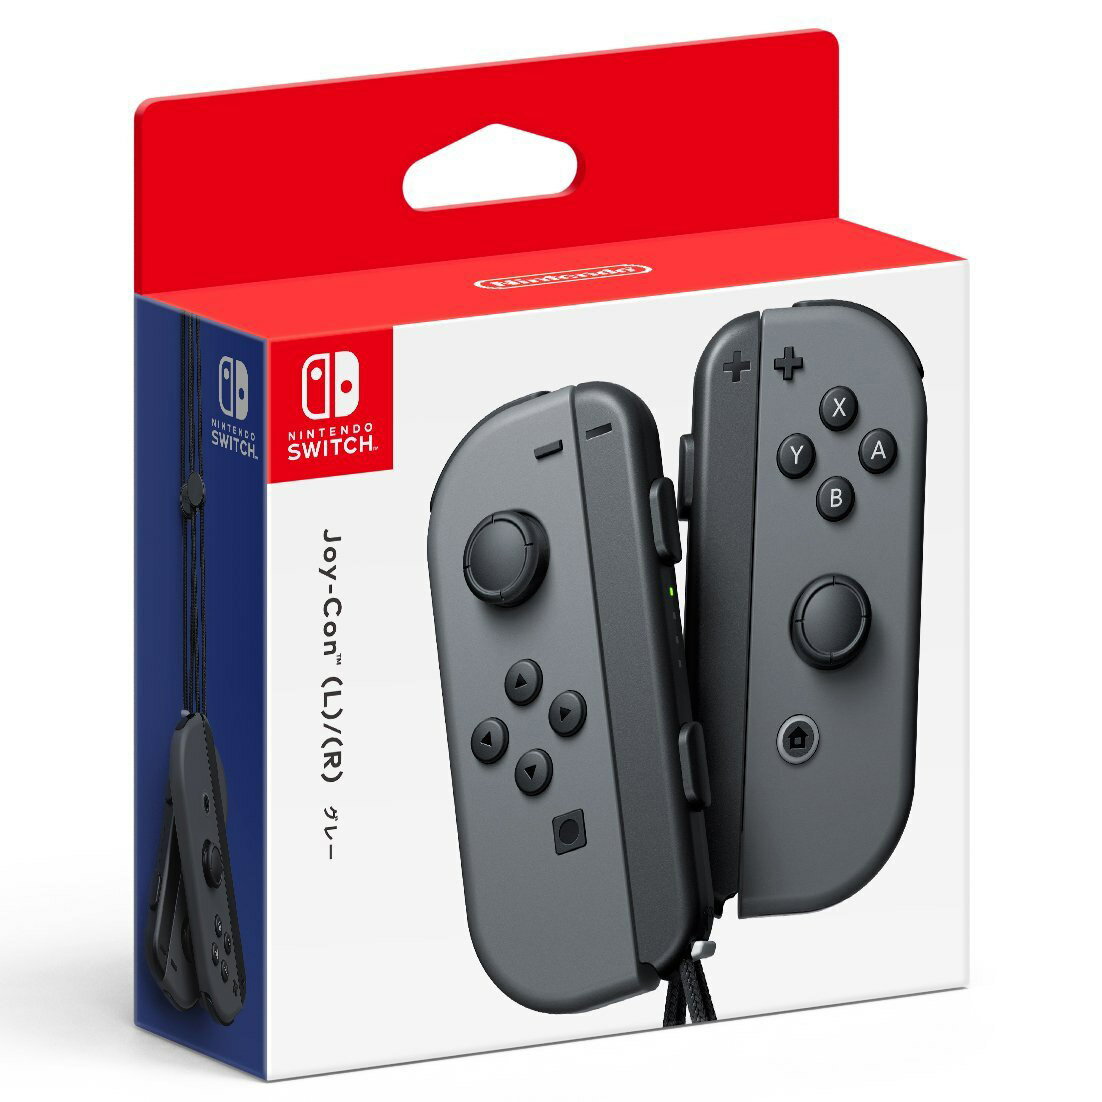 現貨供應中[普遍級]Nintendo Switch Joy-Con 控制器組(黑)